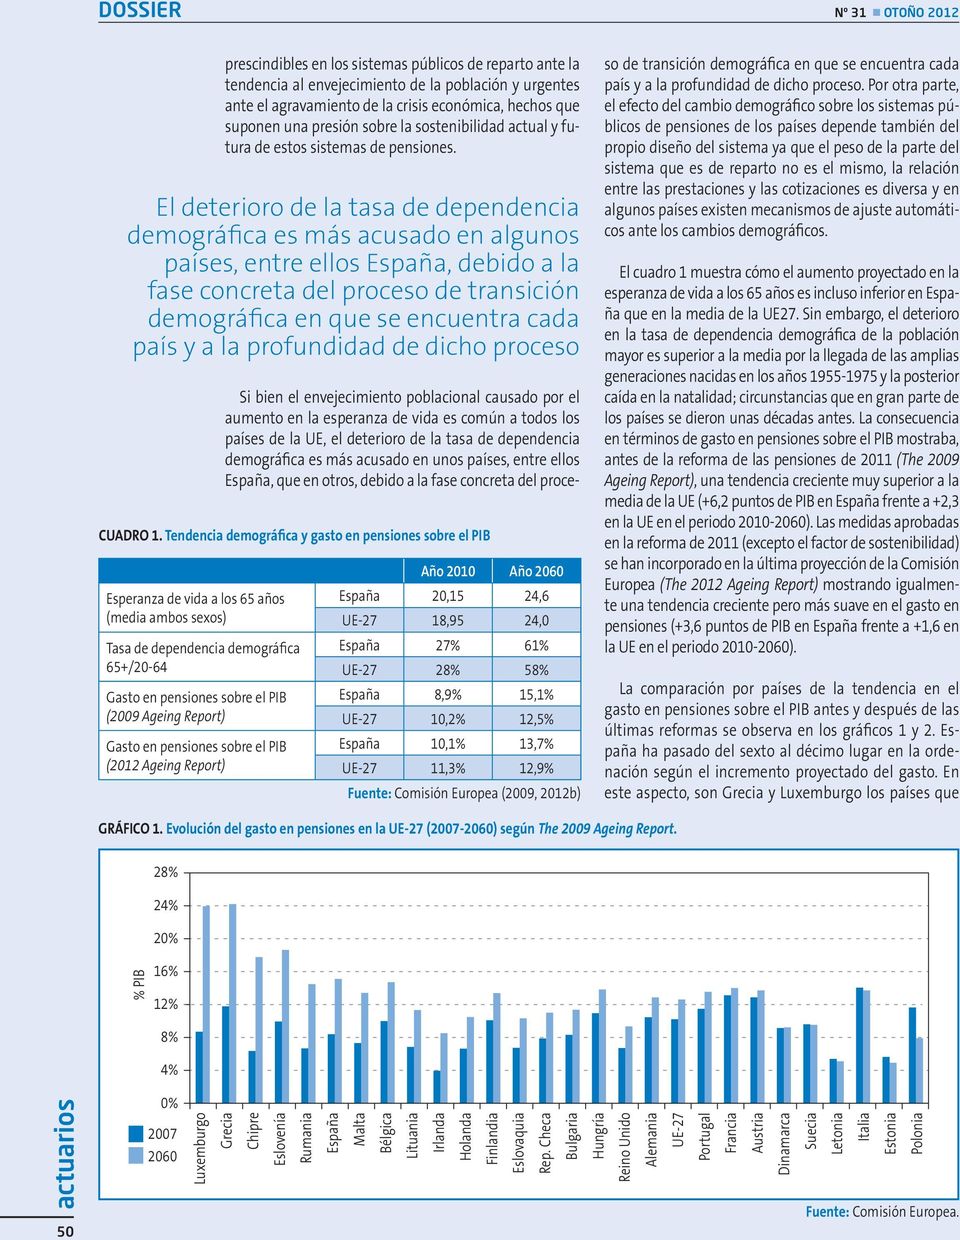 El deterioro de la tasa de dependencia demográfica es más acusado en algunos países, entre ellos España, debido a la fase concreta del proceso de transición demográfica en que se encuentra cada país